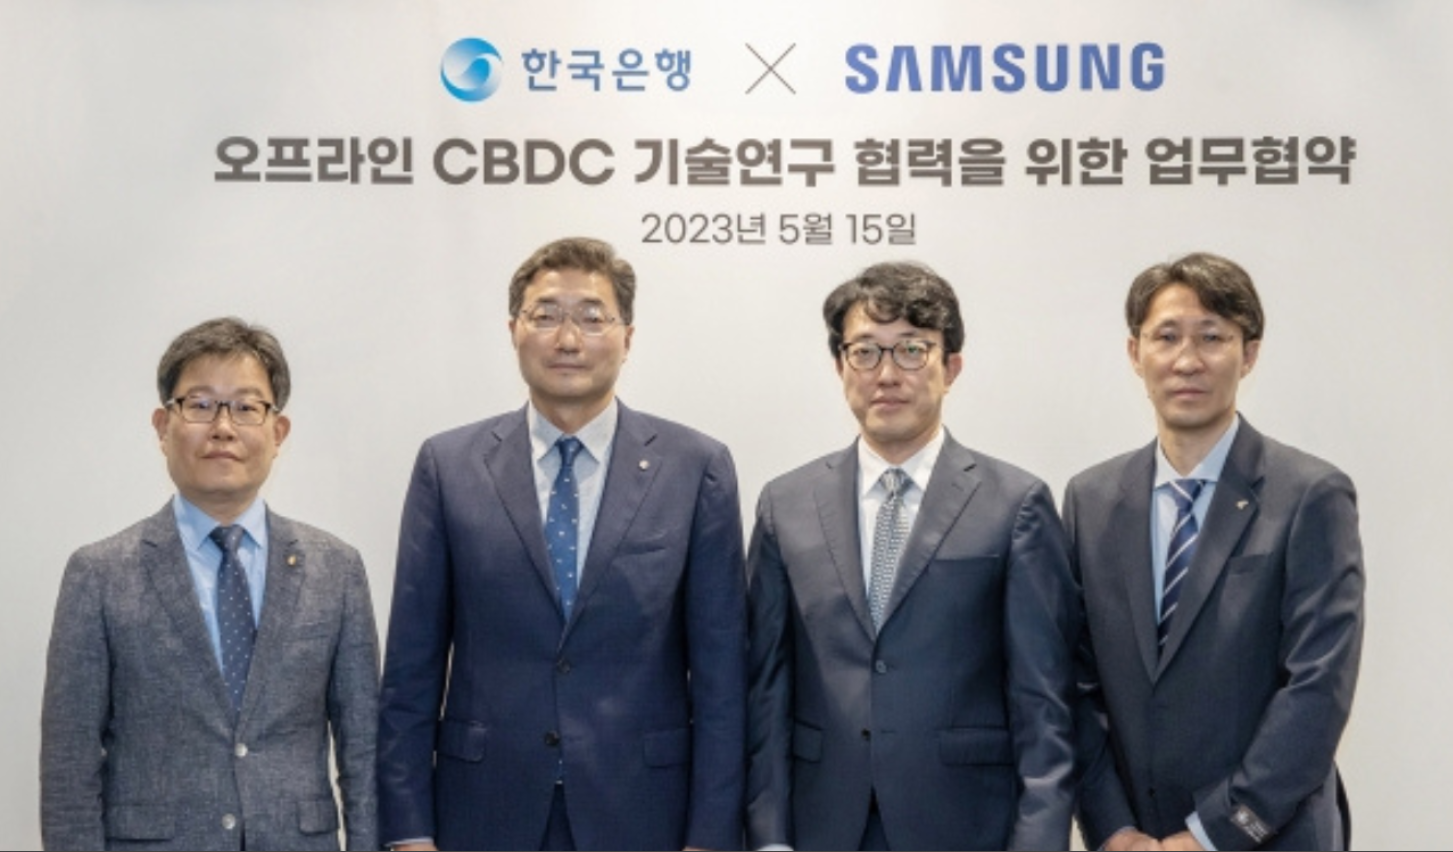 Samsung zbada CBDC Korei Południowej pod kątem płatności offline